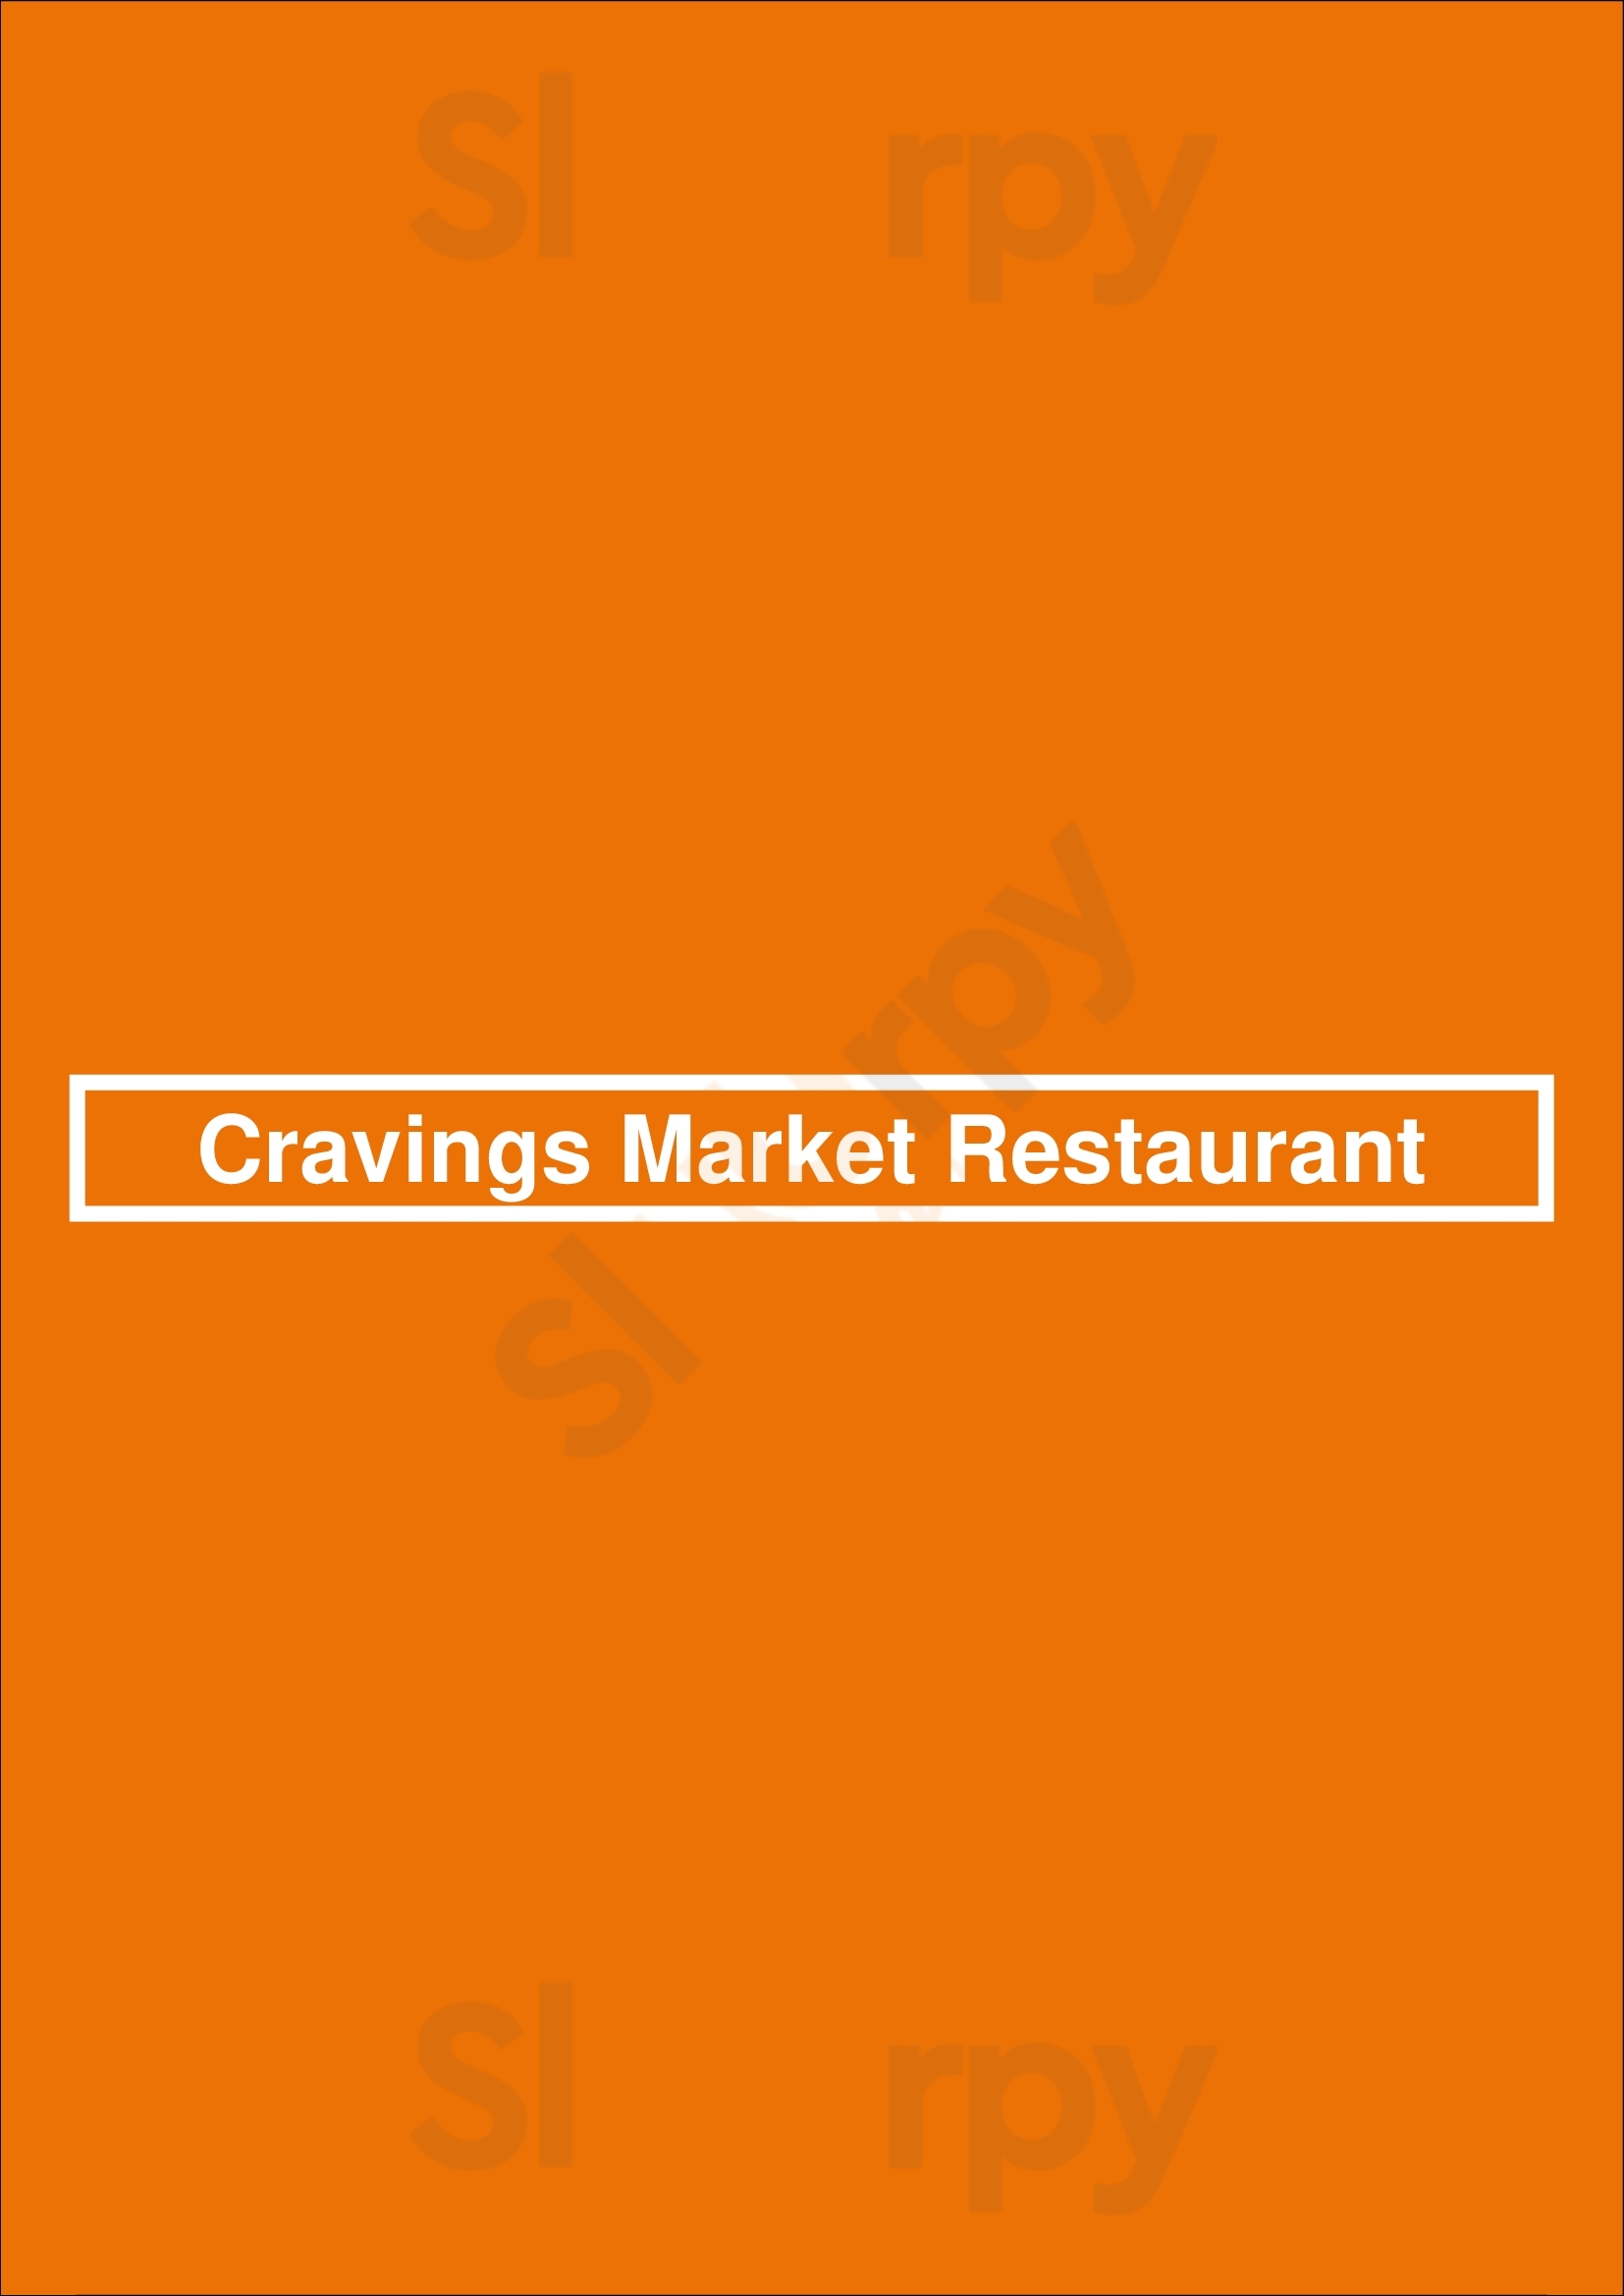 Cravings Market Restaurant Calgary Menu - 1